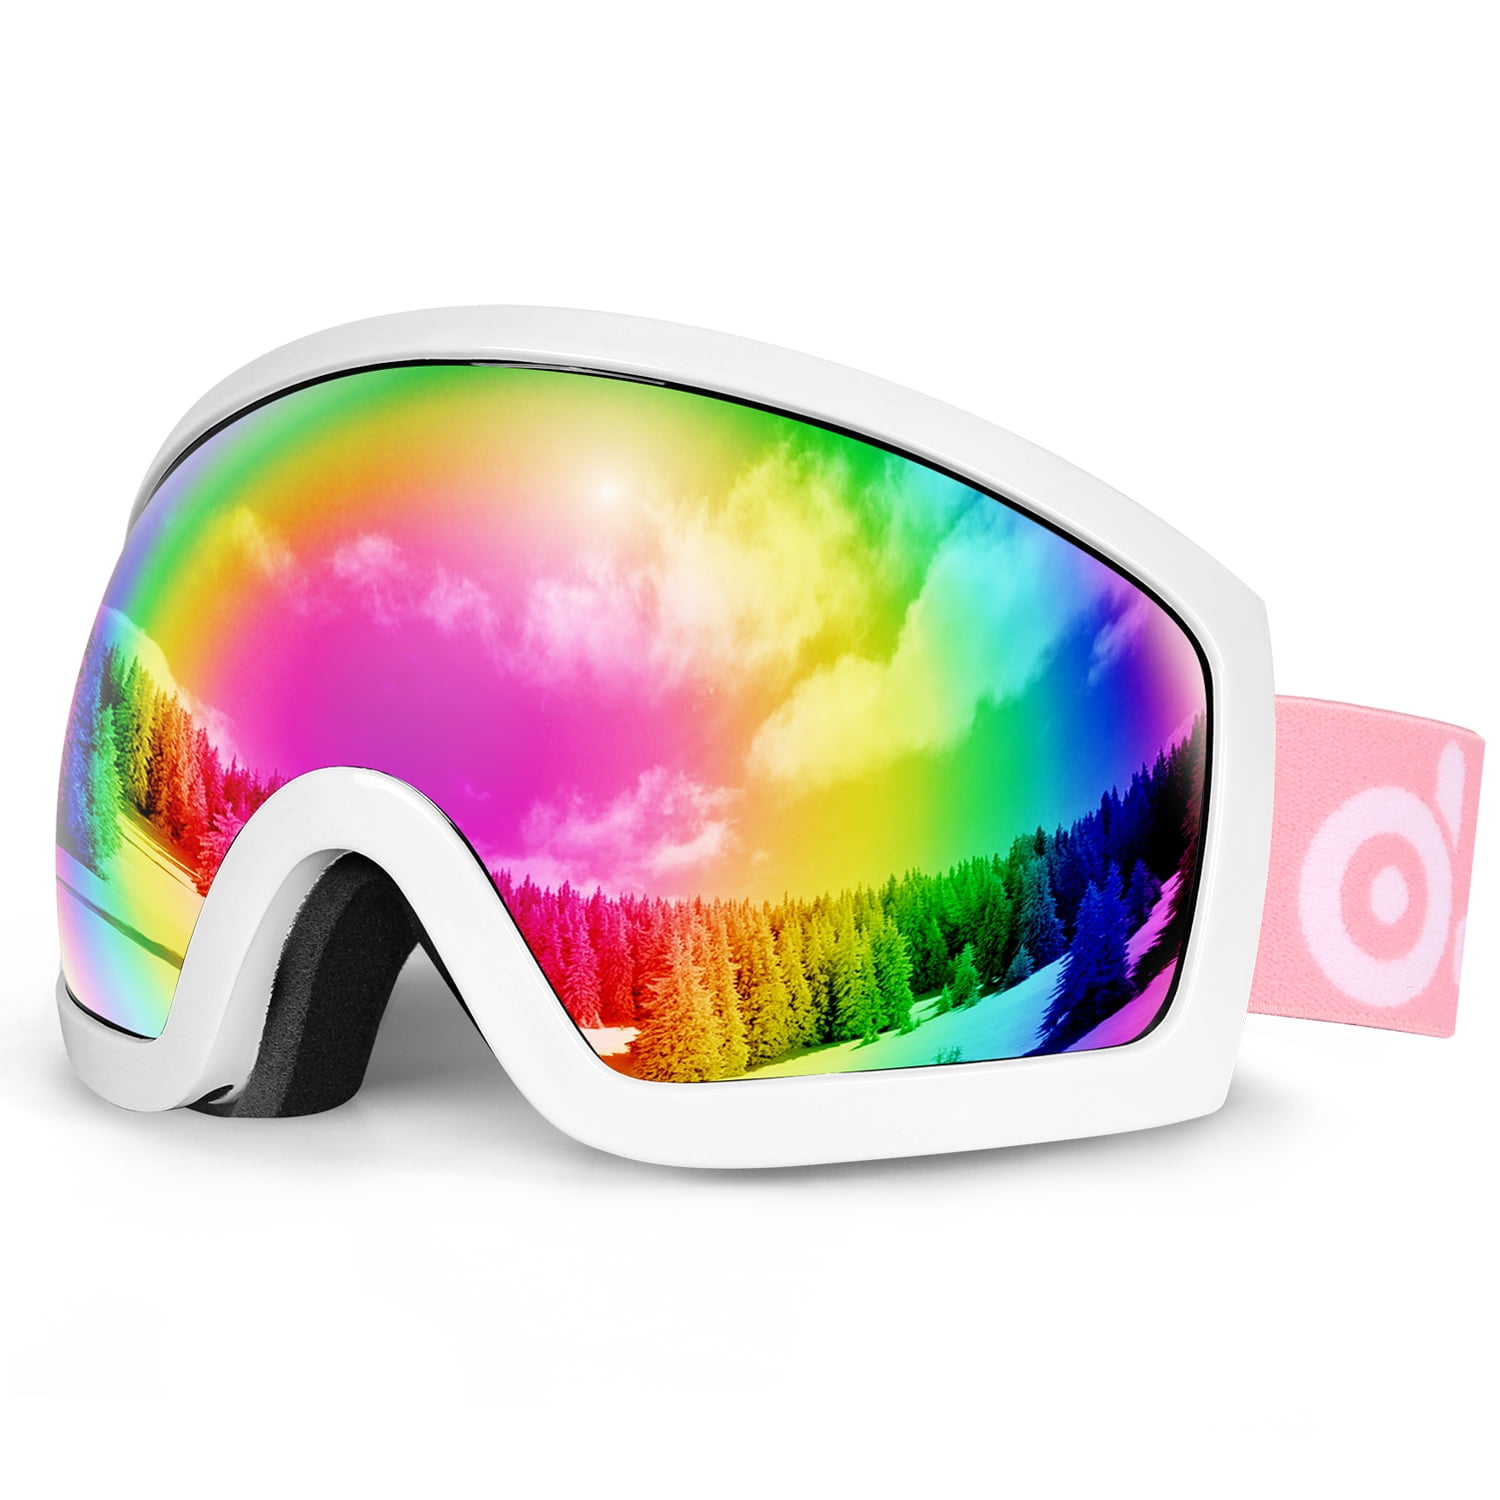 Adult Children Ski Goggles Sports Snowboard Goggles Anti-Fog UV400 Glasses New 